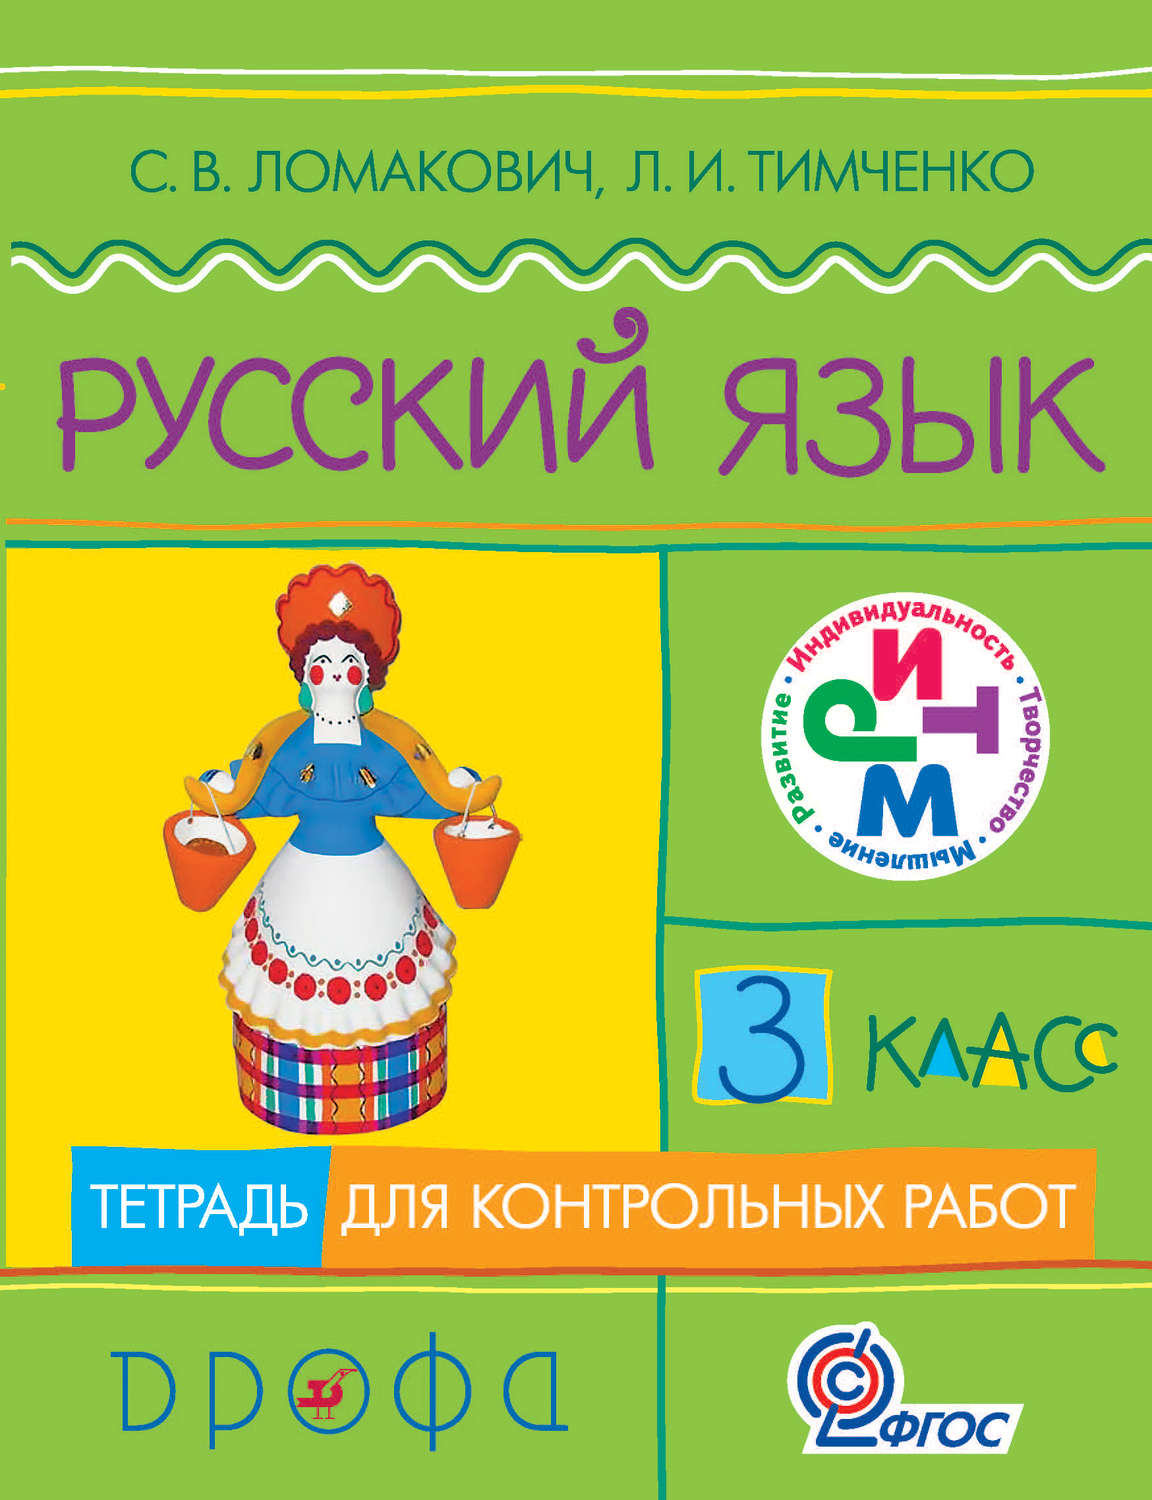 Контрольные работы по русскому языку л.и.тимченко 4 класс читать бесплатно